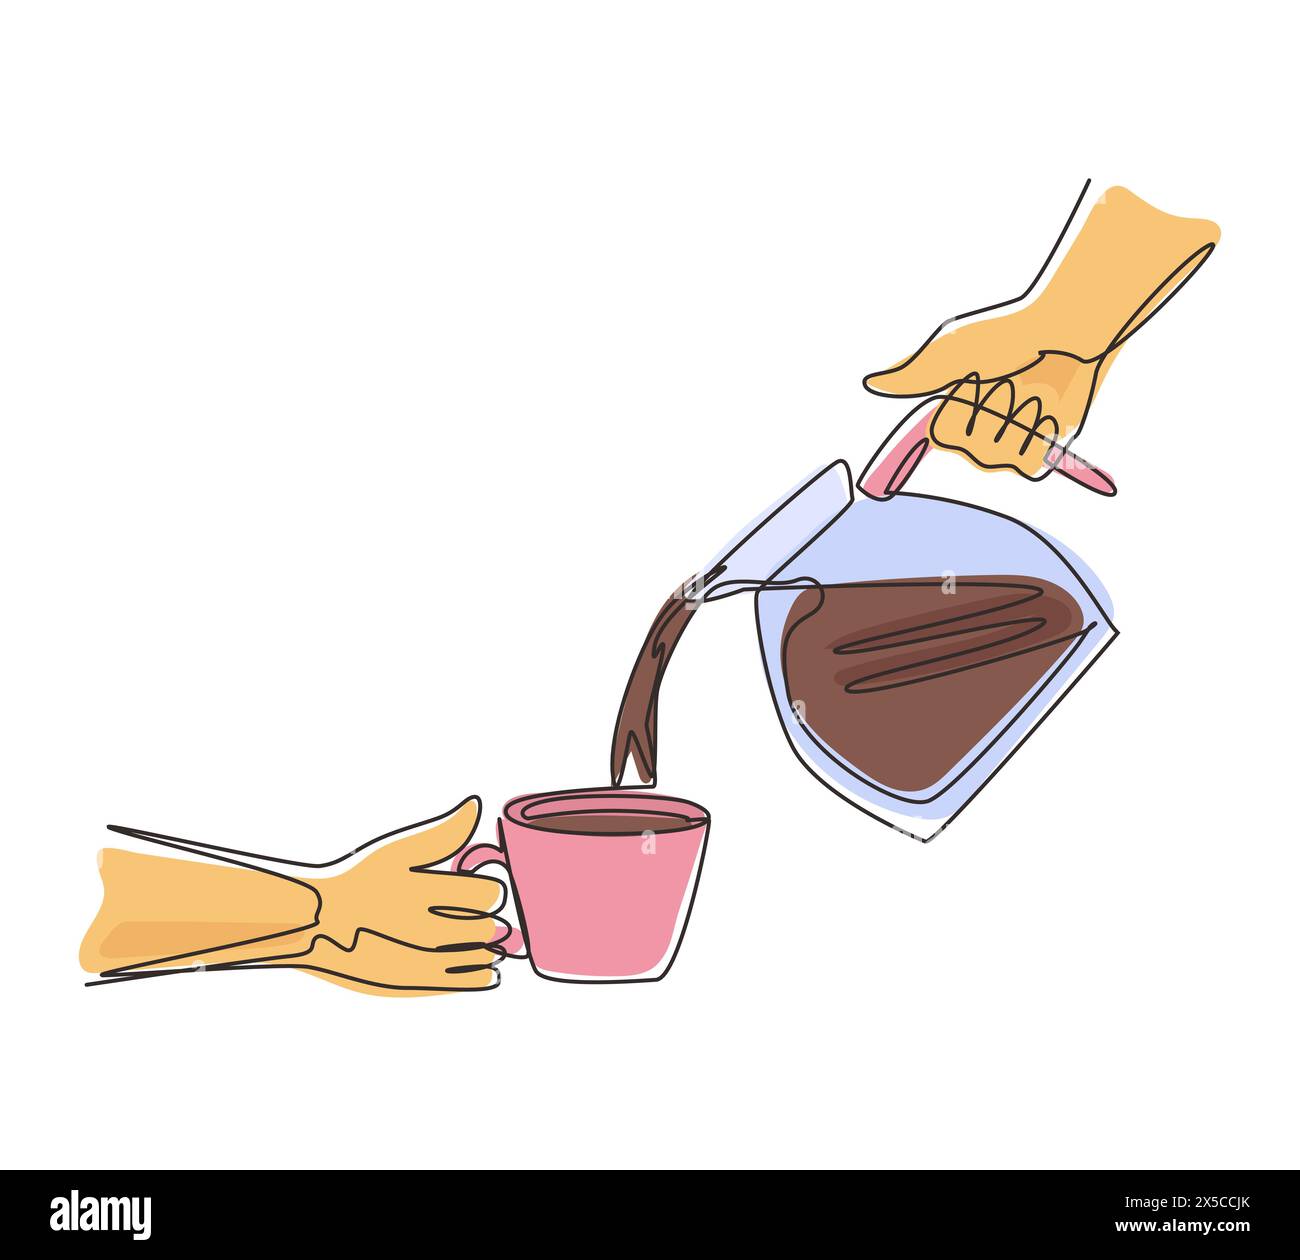 Der Mann mit einer durchgehenden Linie gießt morgens heißen schwarzen Kaffee aus der Kaffeekanne in eine Tasse. Kaffee zuhause zubereiten. Topf aus Edelstahl. M Stock Vektor